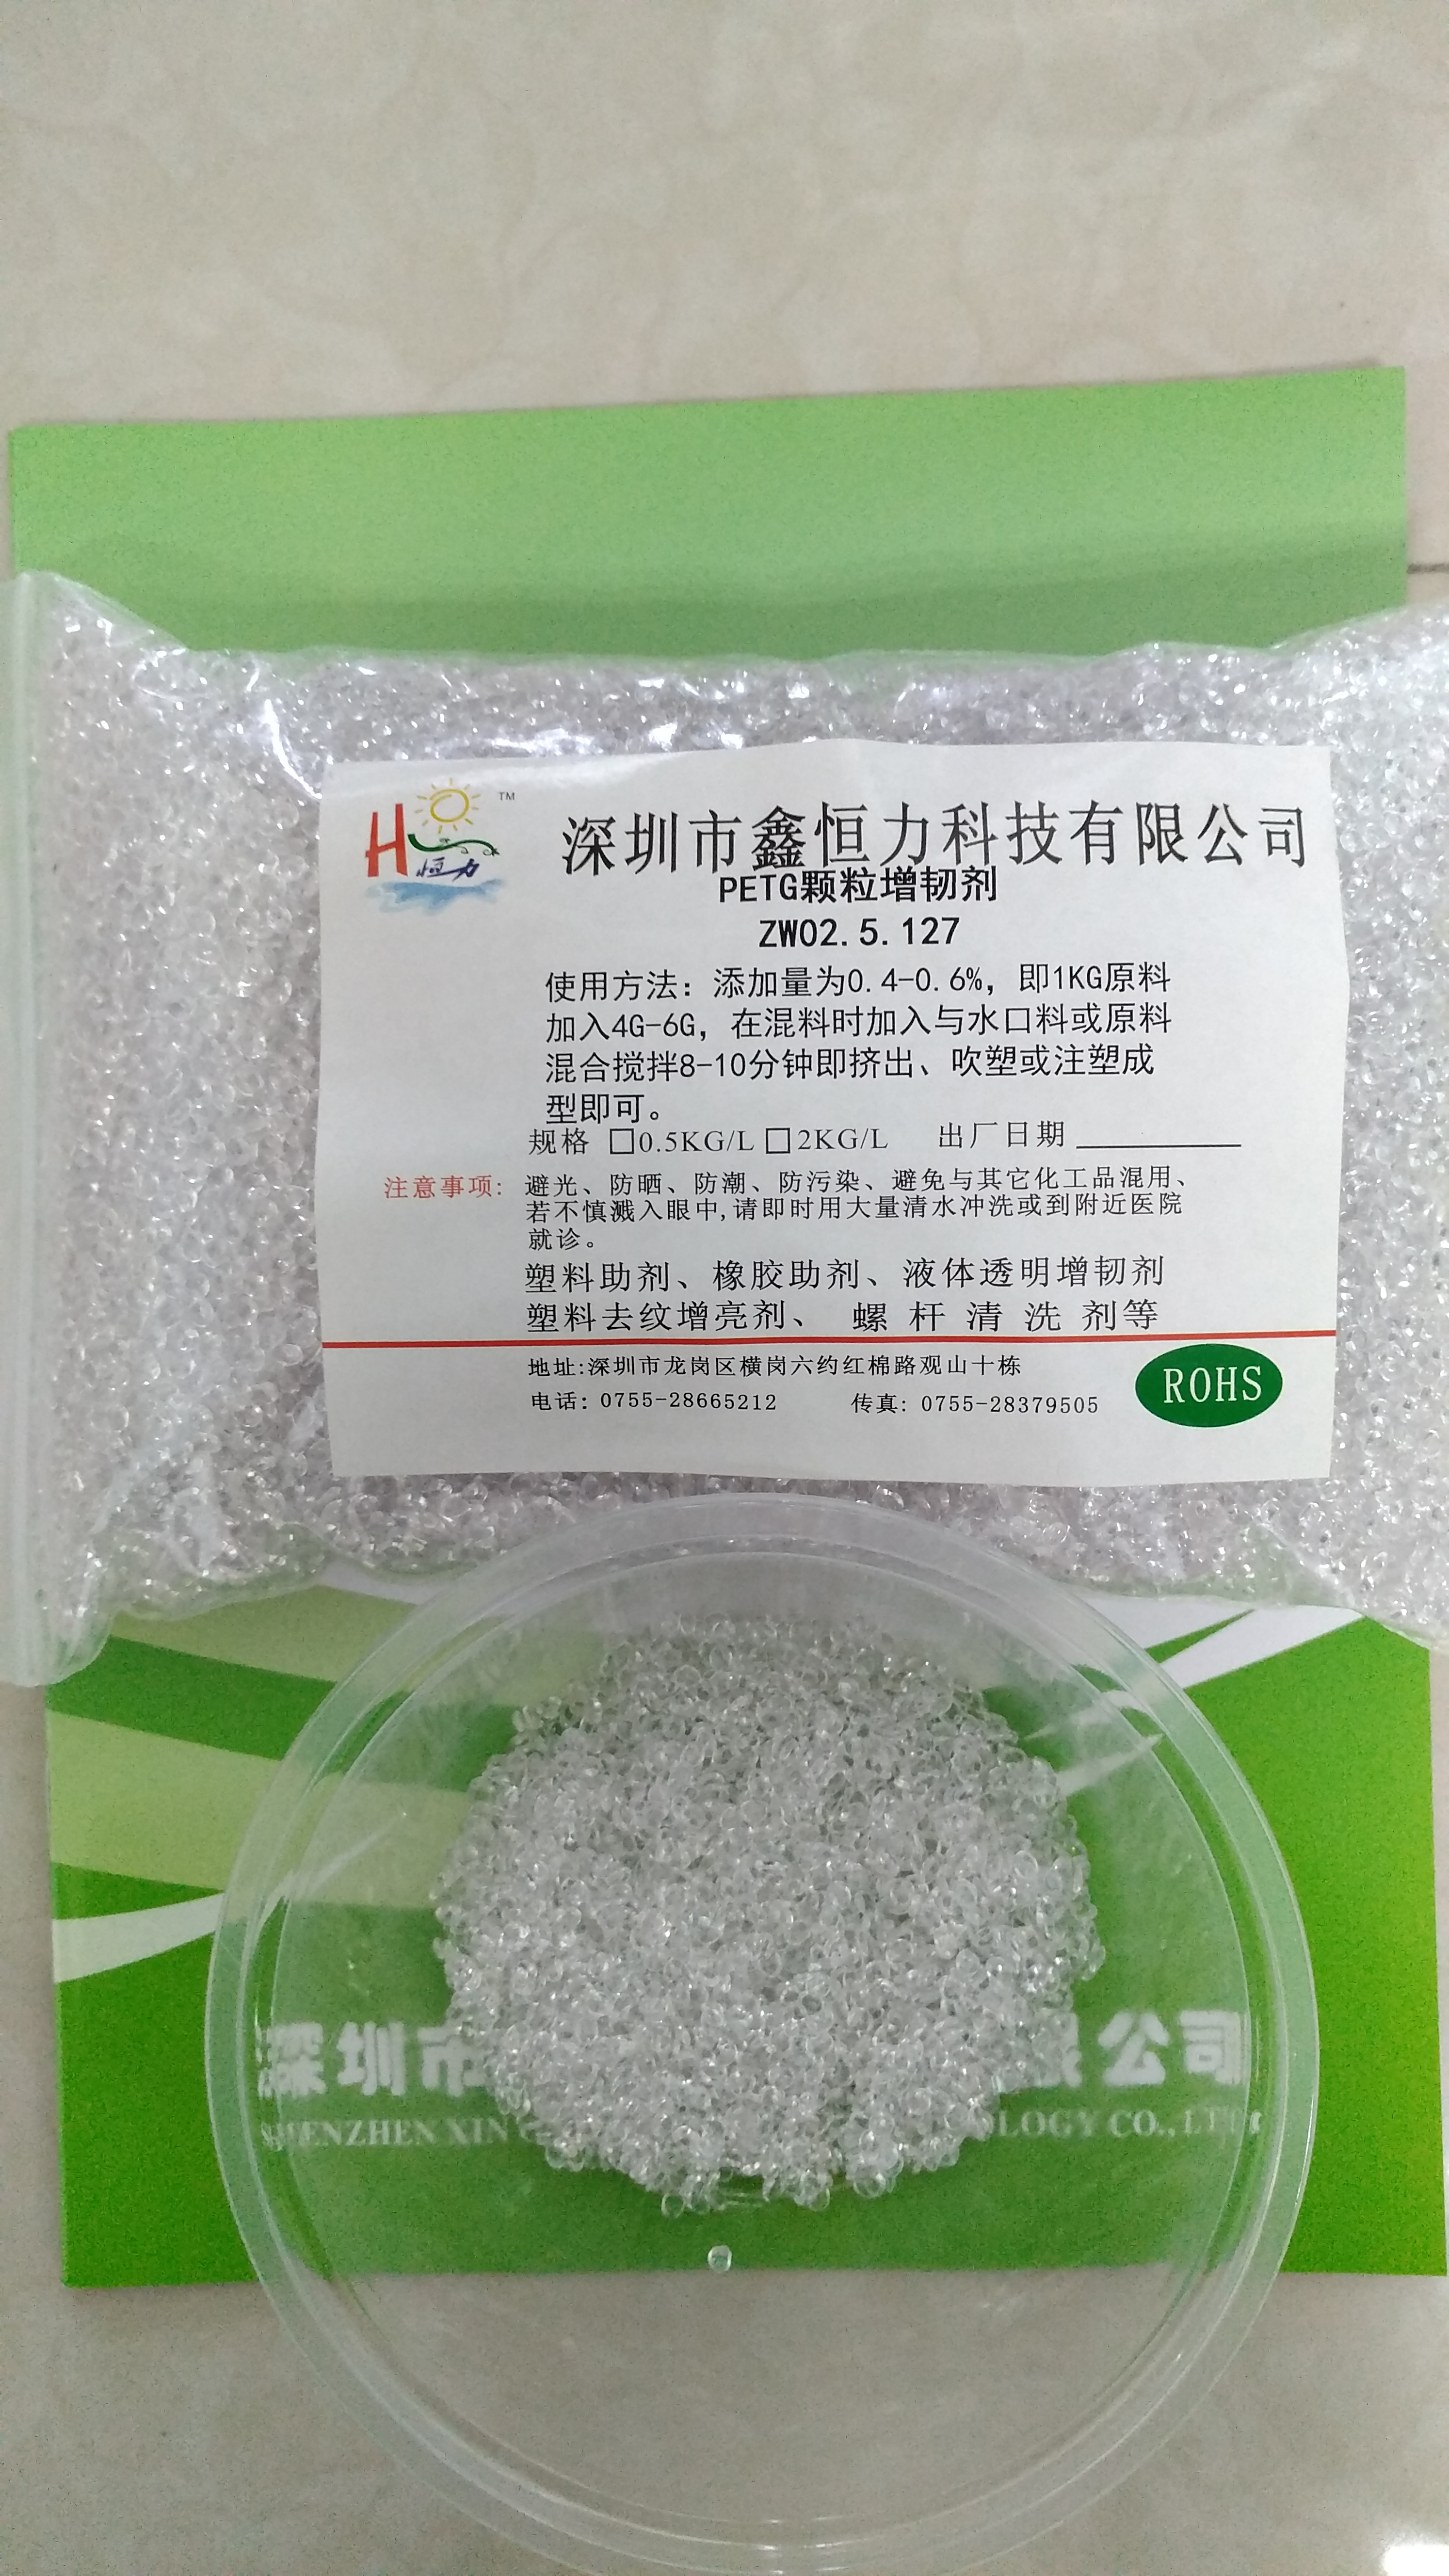 供应用于增粘增韧剂的PETG增粘增韧剂原料回料增粘增韧剂图片